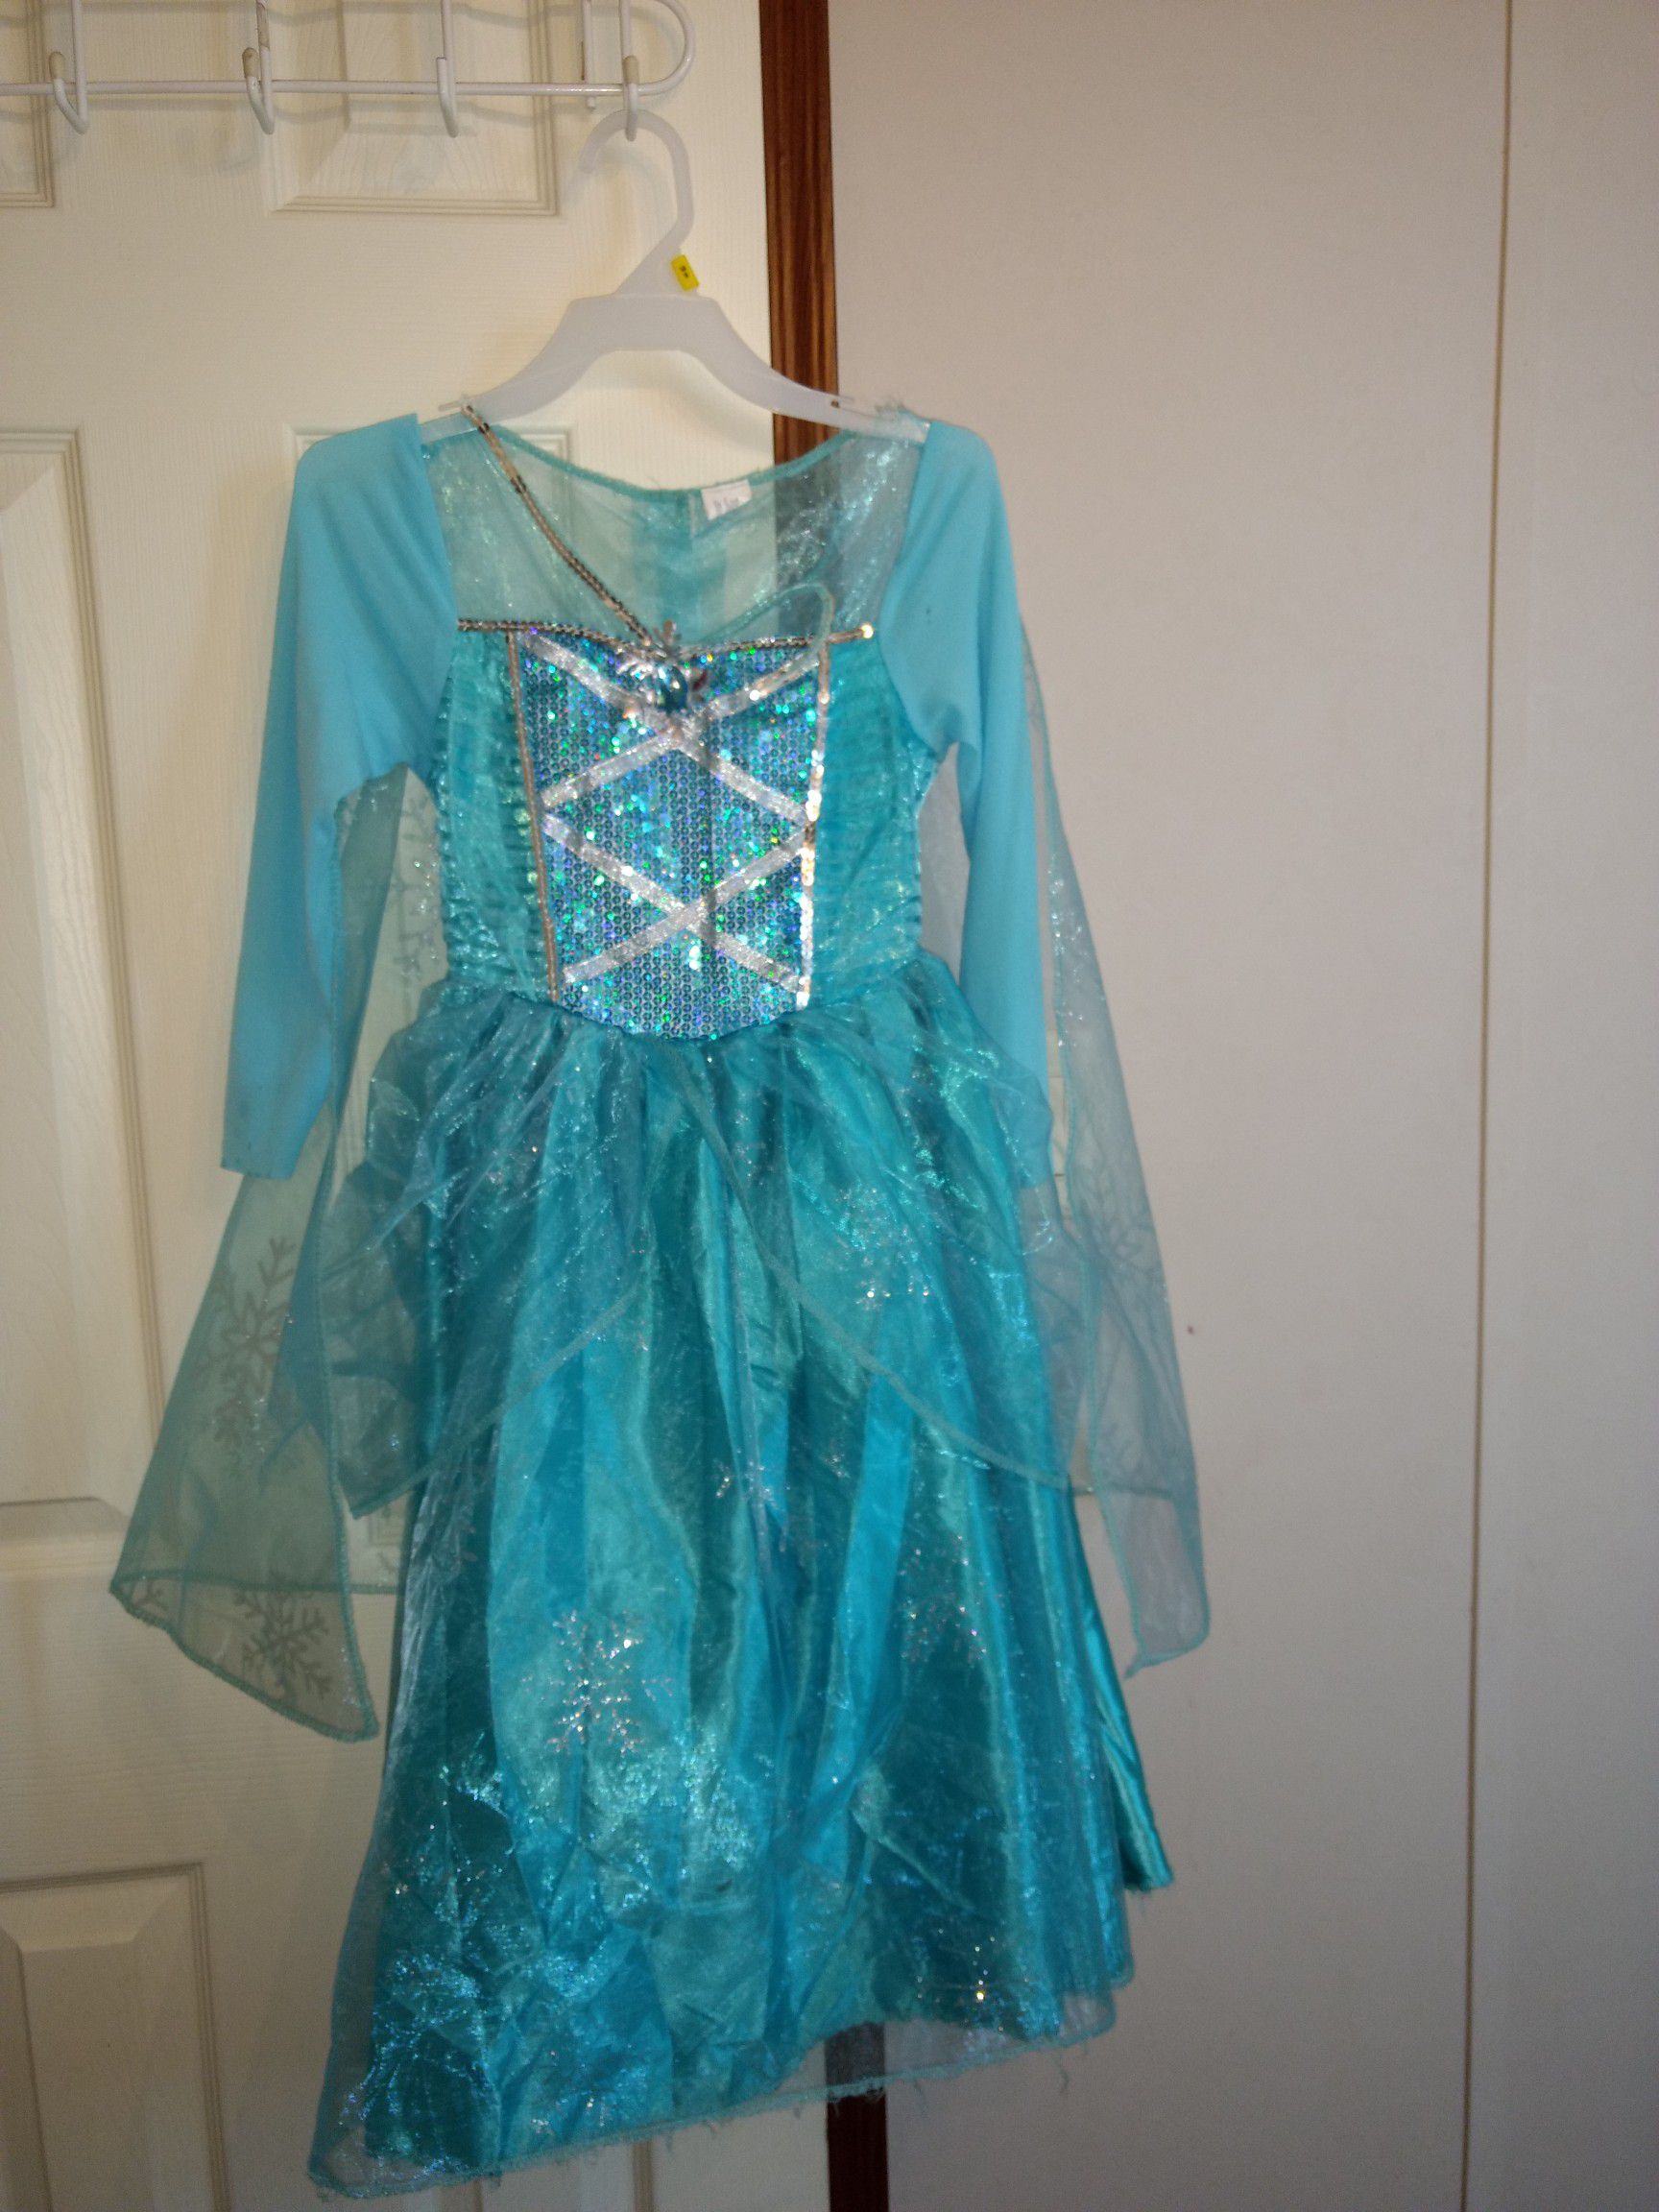 Elsa dress costume